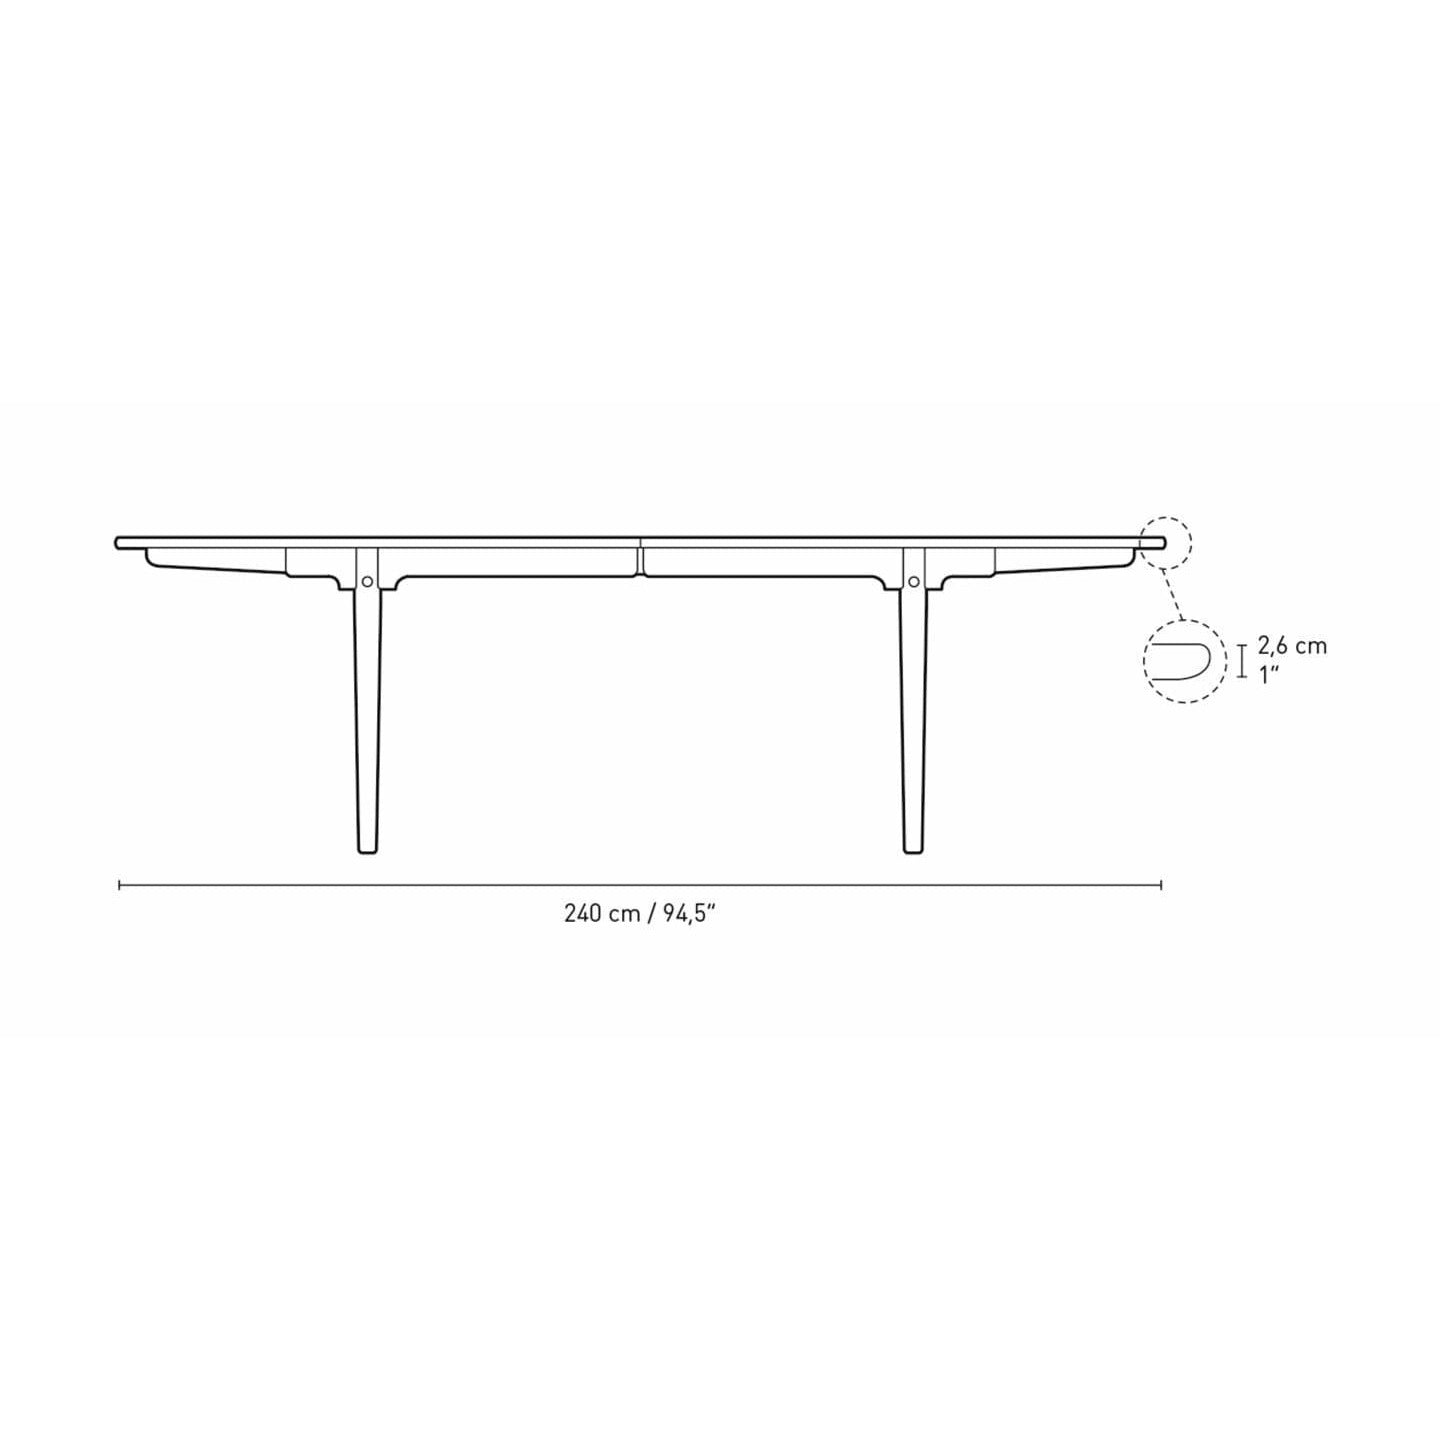 Carl Hansen CH339 matbord designad för 2 dragningsplattor, tvålad ek